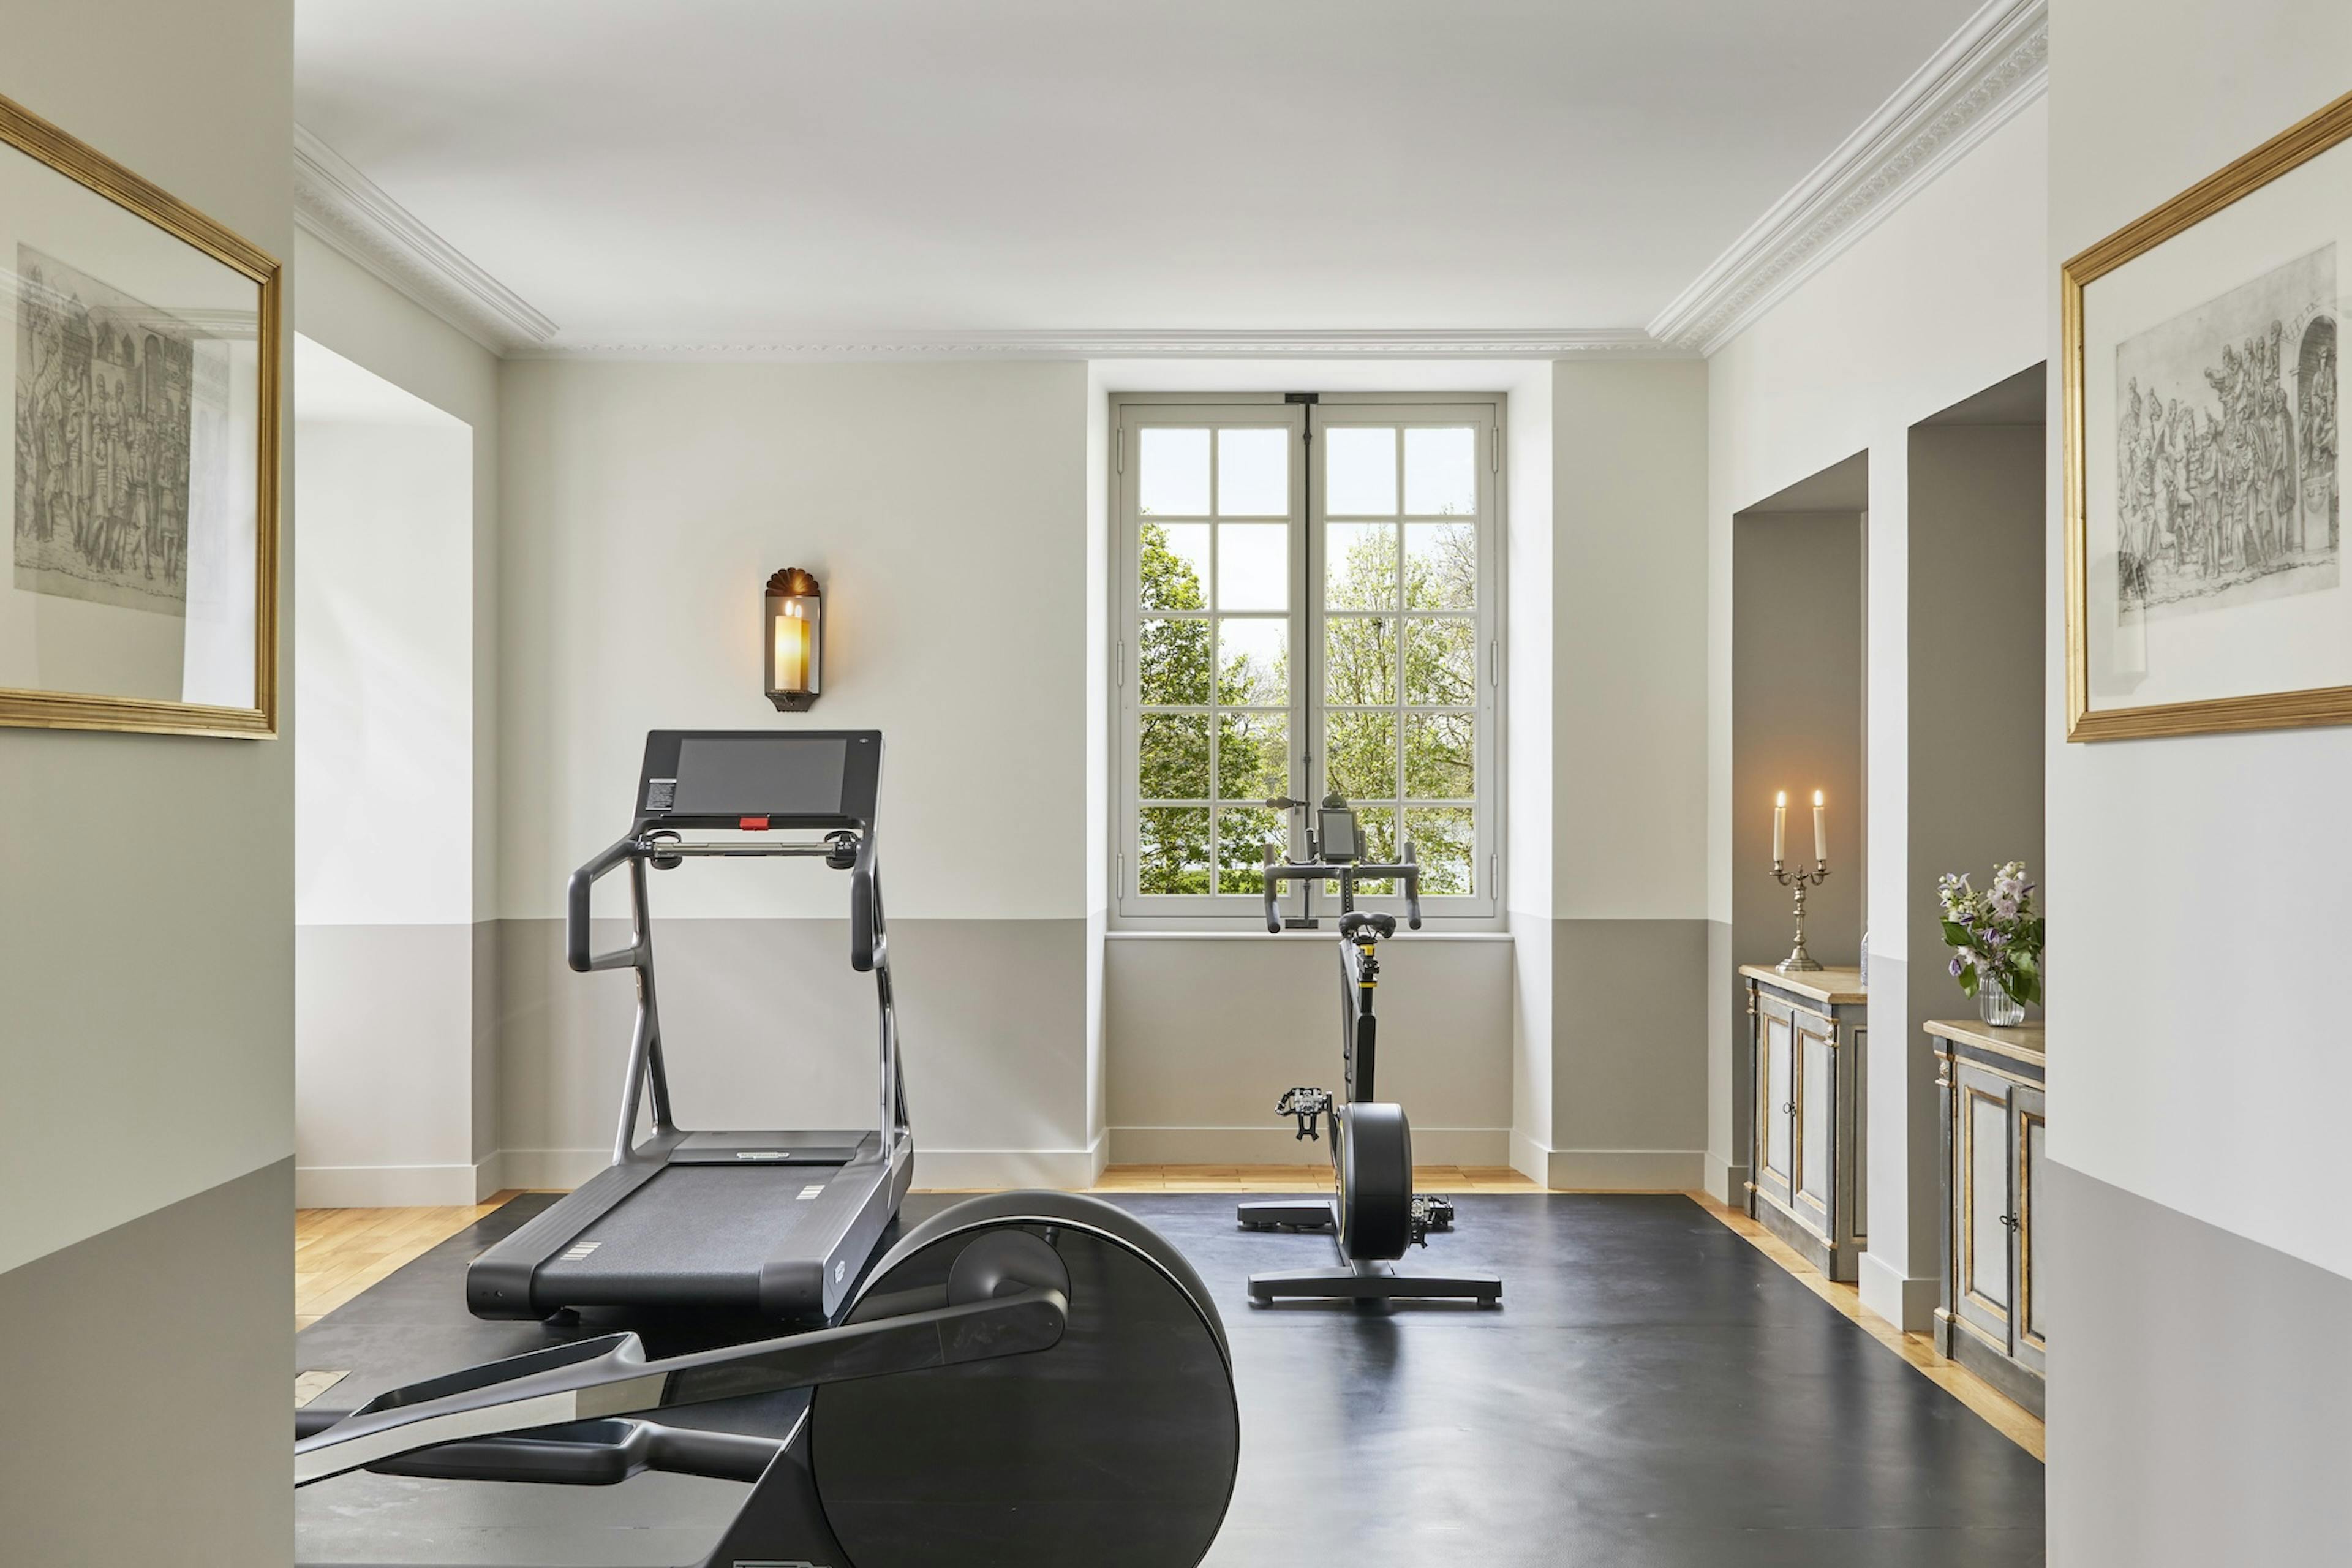 Salle de fitness avec équipements de musculation à l'hôtel de luxe Airelles Château de Versailles, Le Grand Contrôle